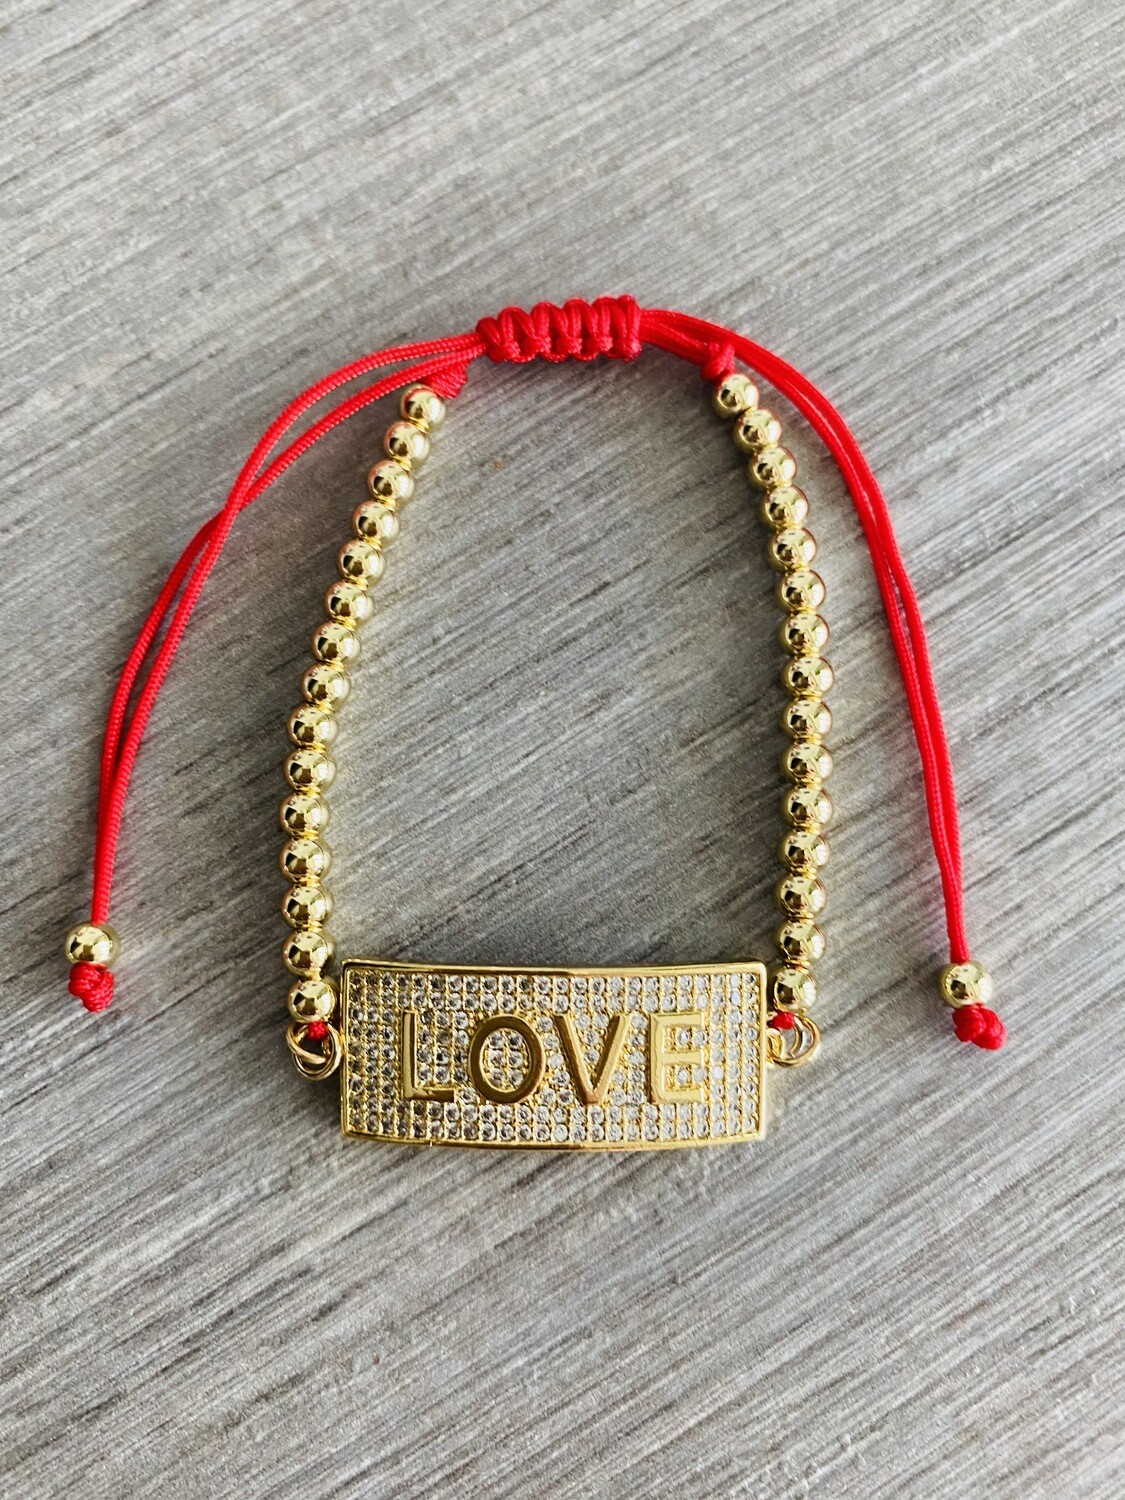 Love Bar Bracelets, Color: Red &amp; Gold Cord - Gold Bar